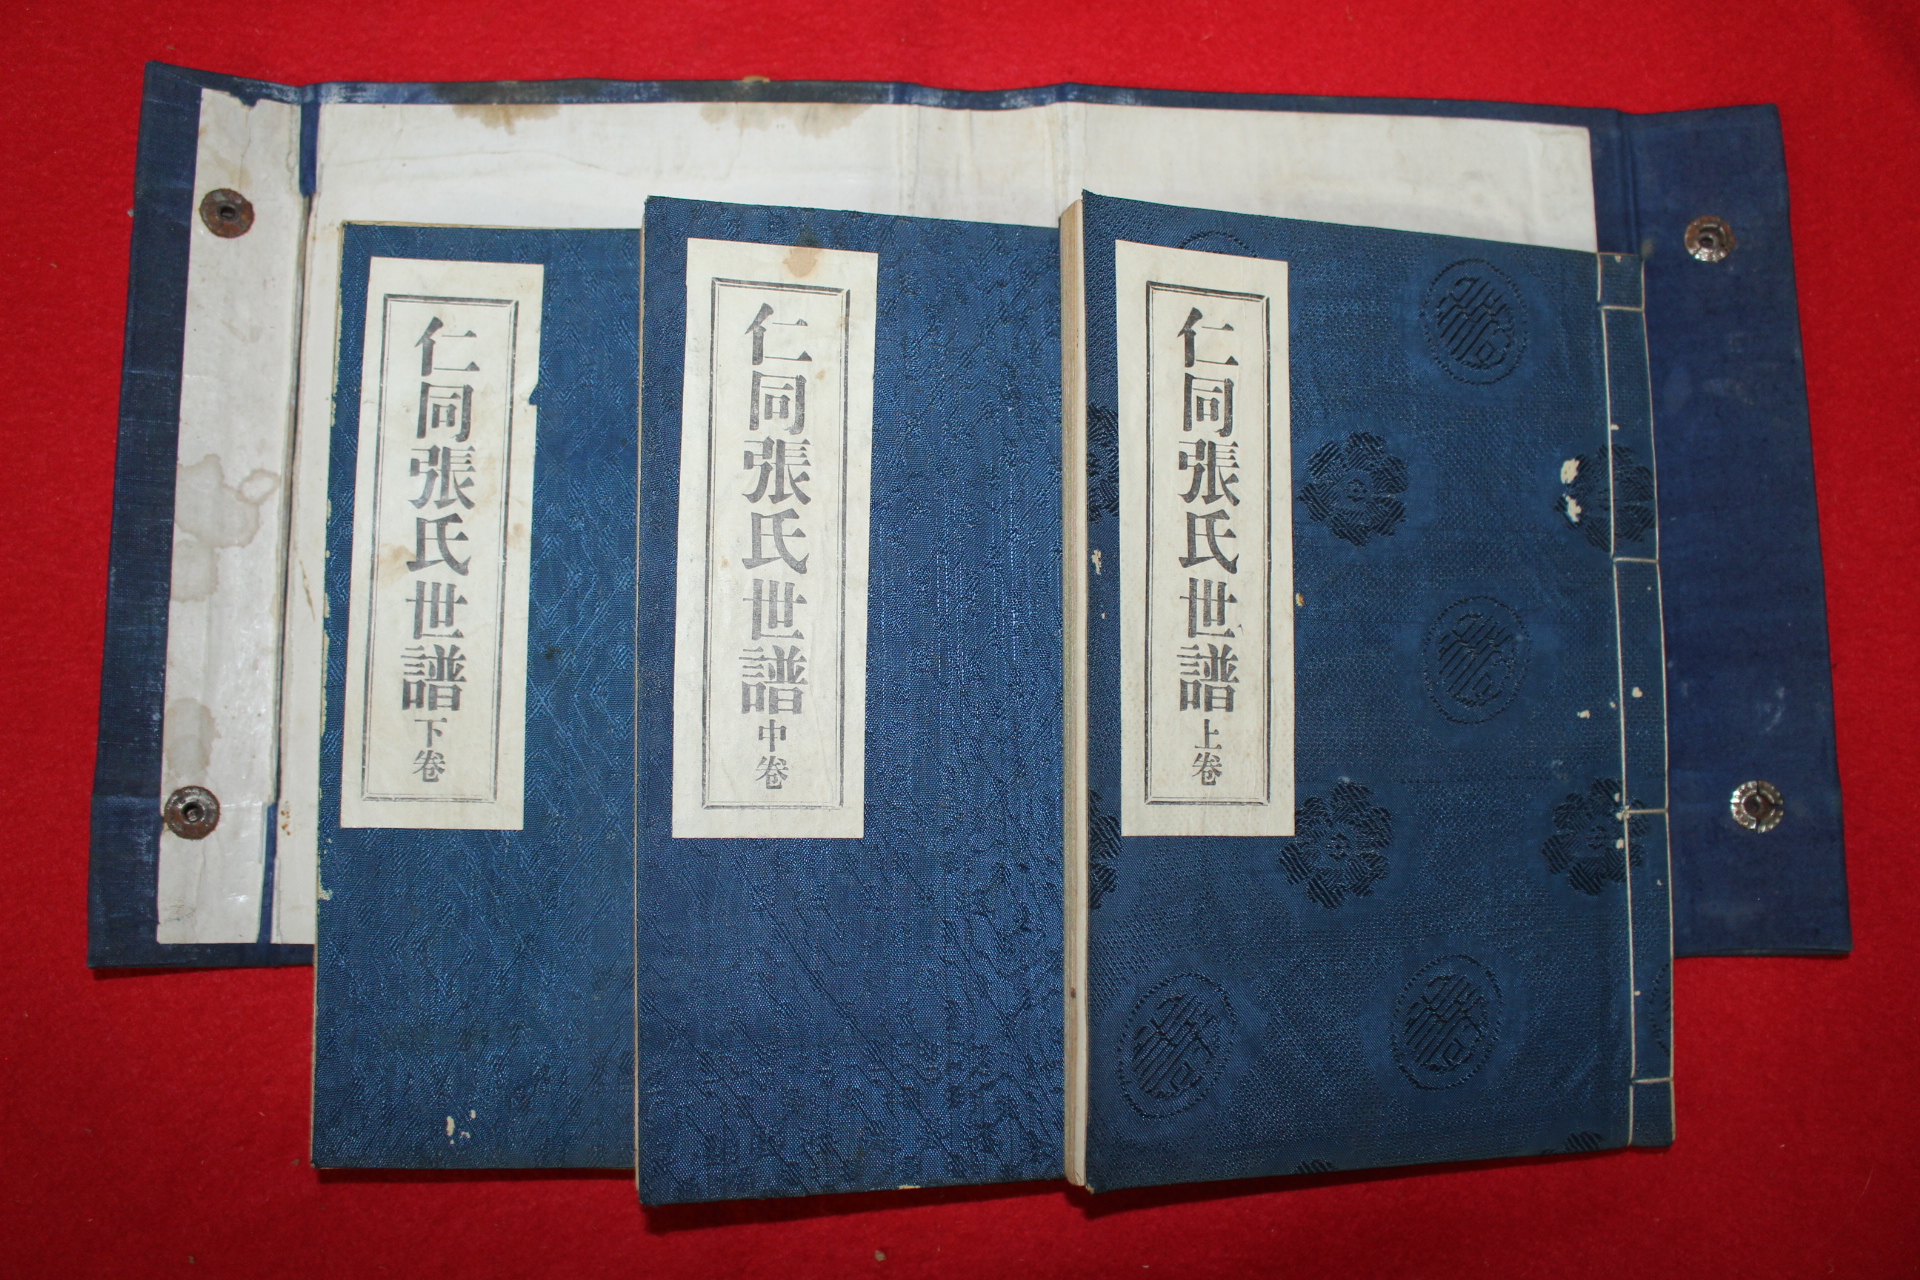 1957년(단기4290년) 인동장씨세보(仁同張氏世譜) 3책완질